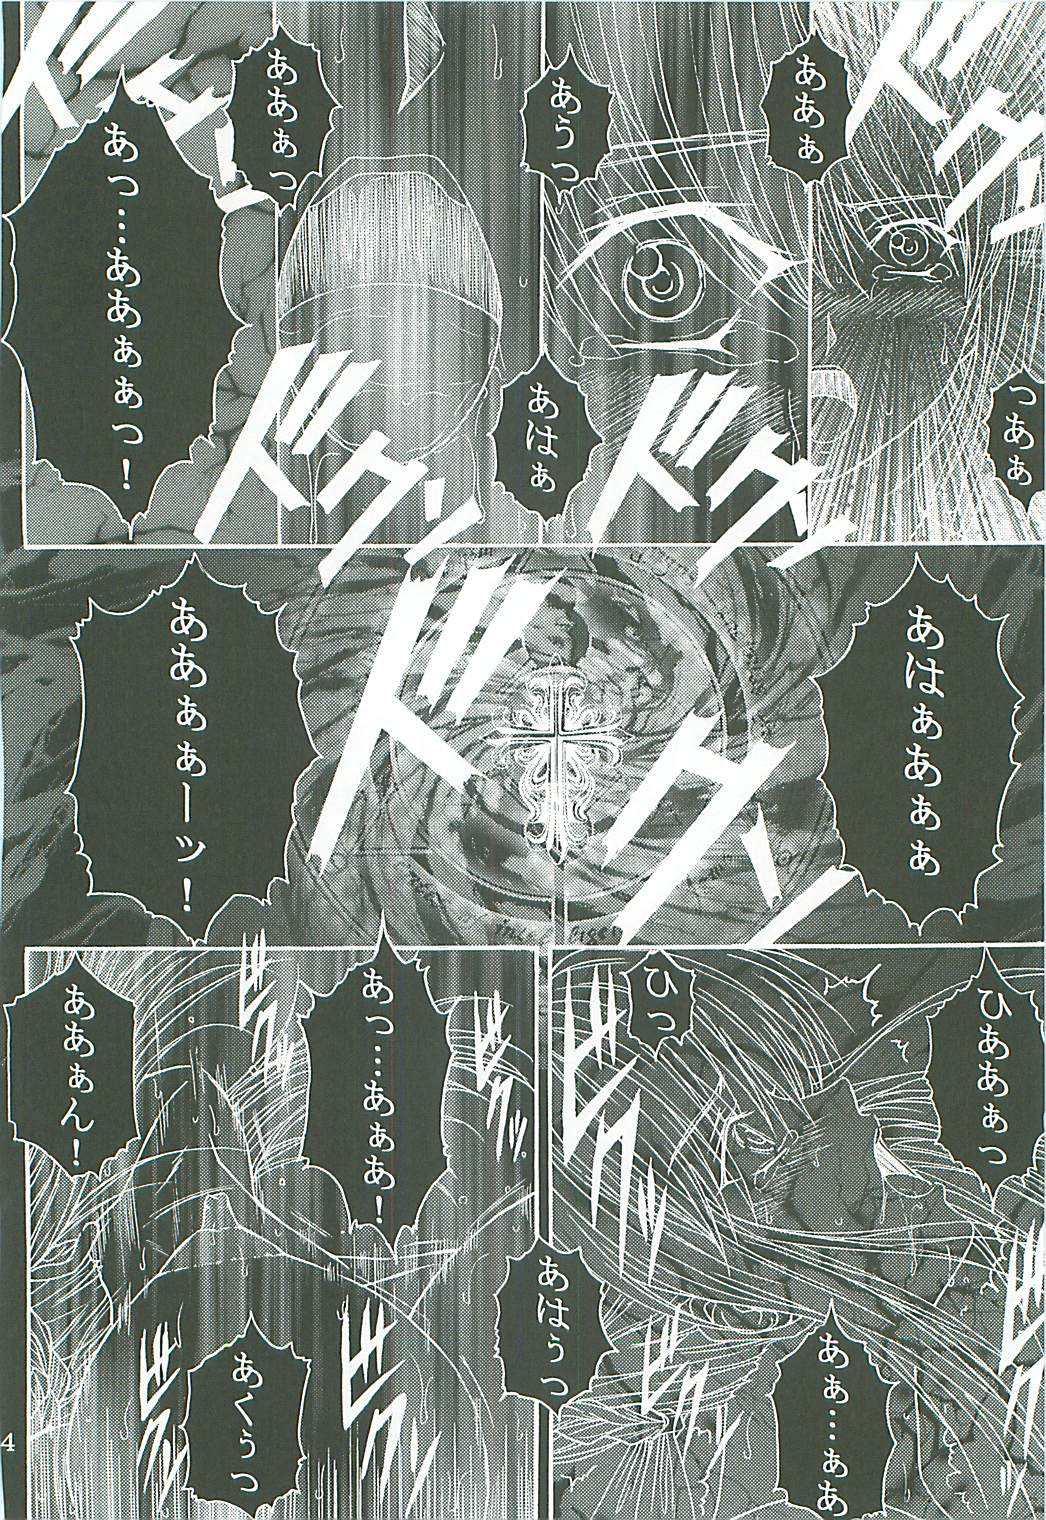 [KUSARI (アオイみっく)] 奴隷騎士 II (Fate/stay night)